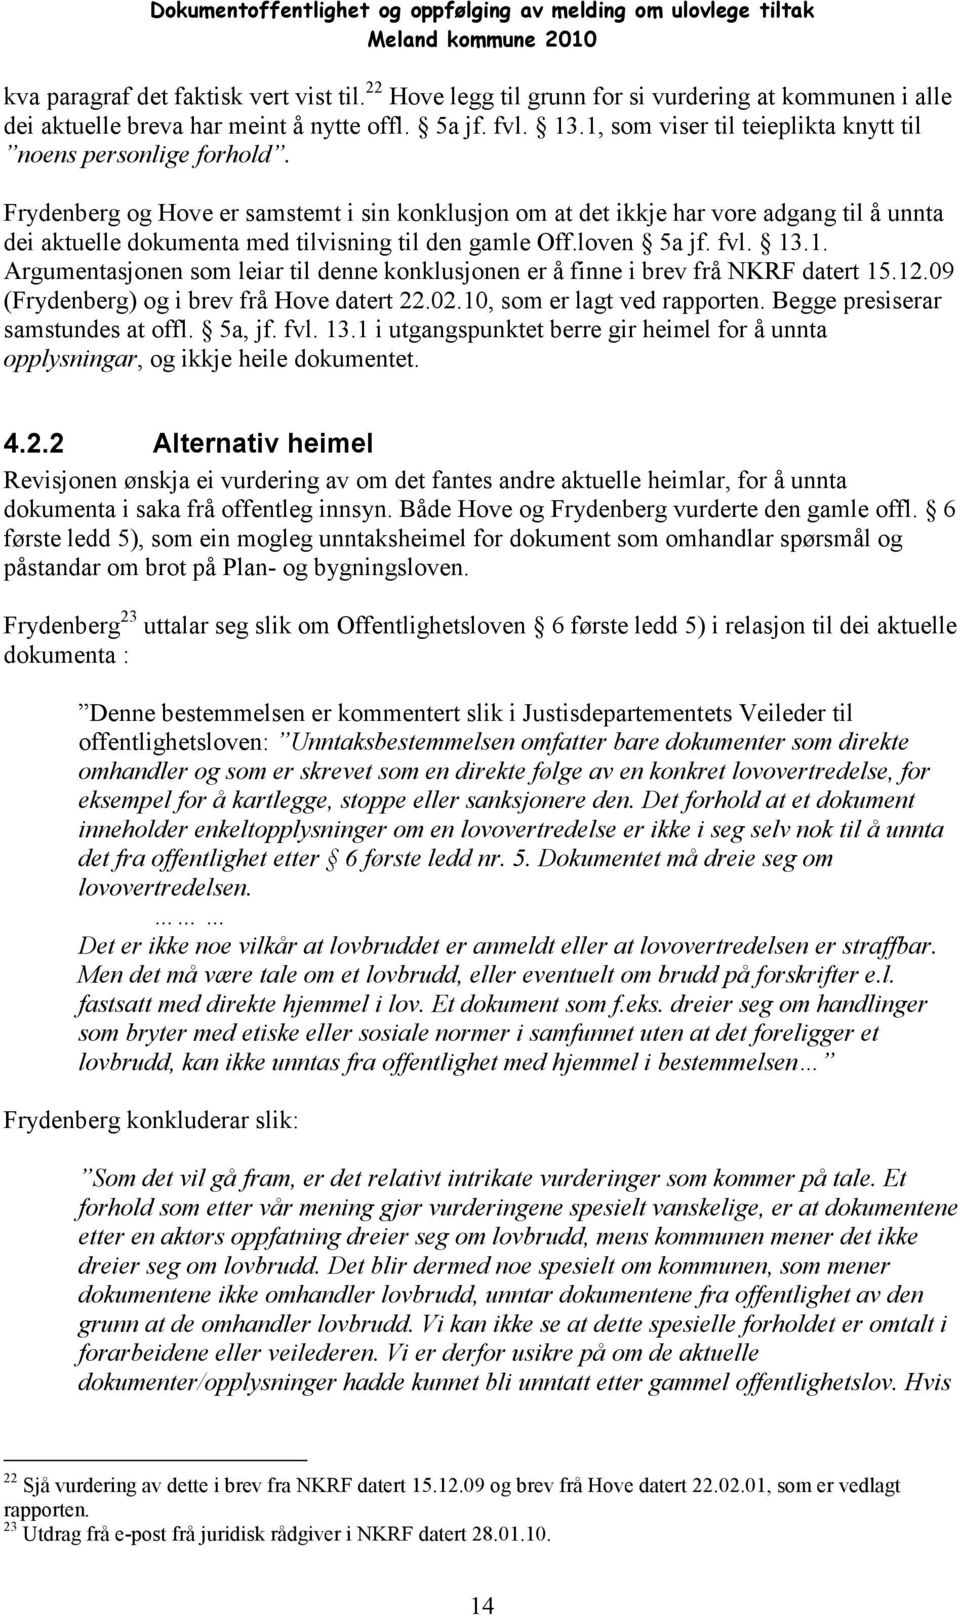 Frydenberg og Hove er samstemt i sin konklusjon om at det ikkje har vore adgang til å unnta dei aktuelle dokumenta med tilvisning til den gamle Off.loven 5a jf. fvl. 13